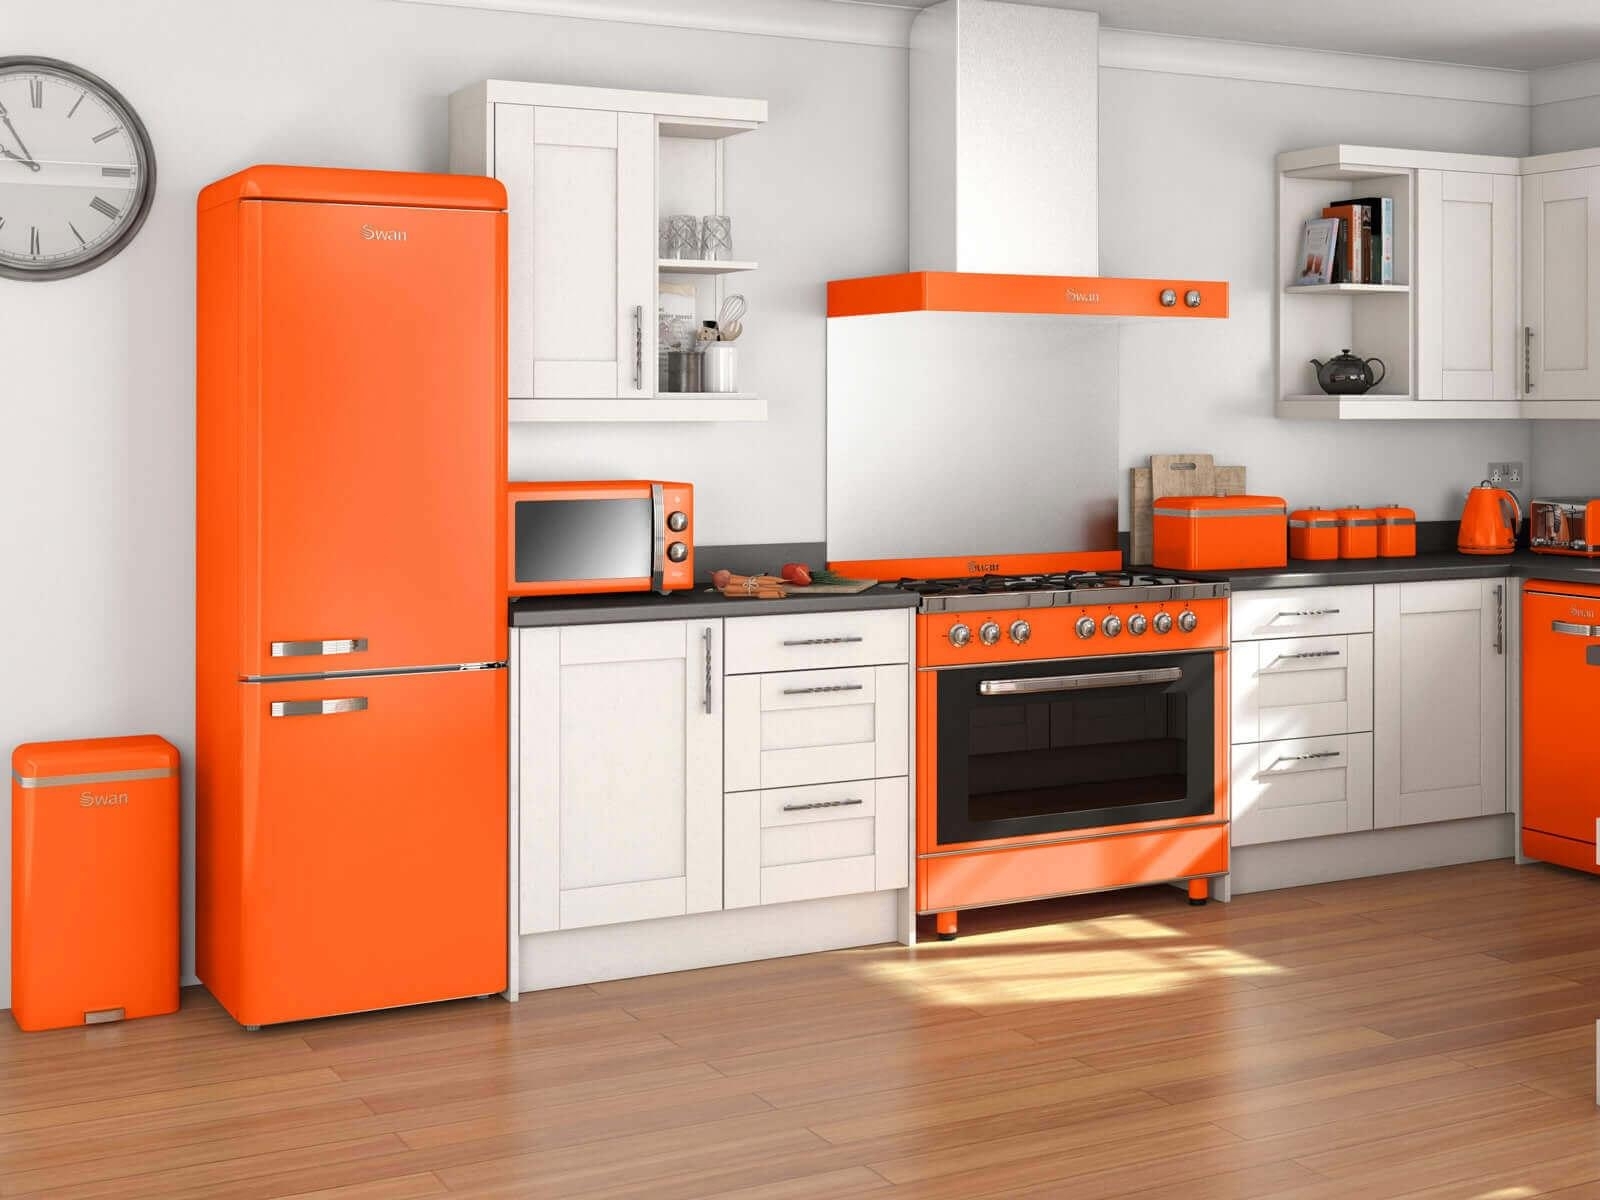 Big Chill Orange Kitchen Appliances 4x 